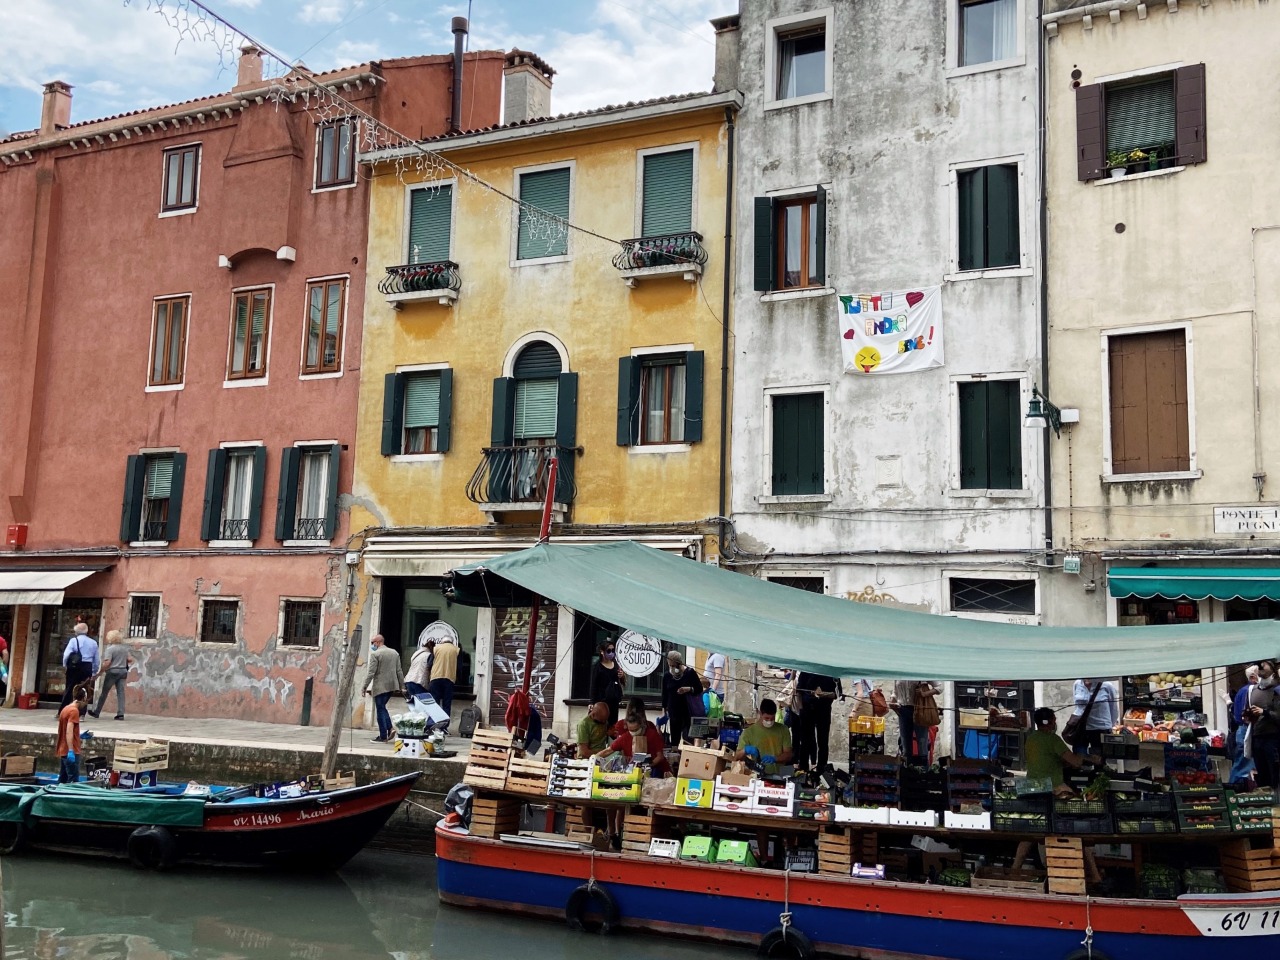 Венеция для венецианцев  | Цена 200€, отзывы, описание экскурсии